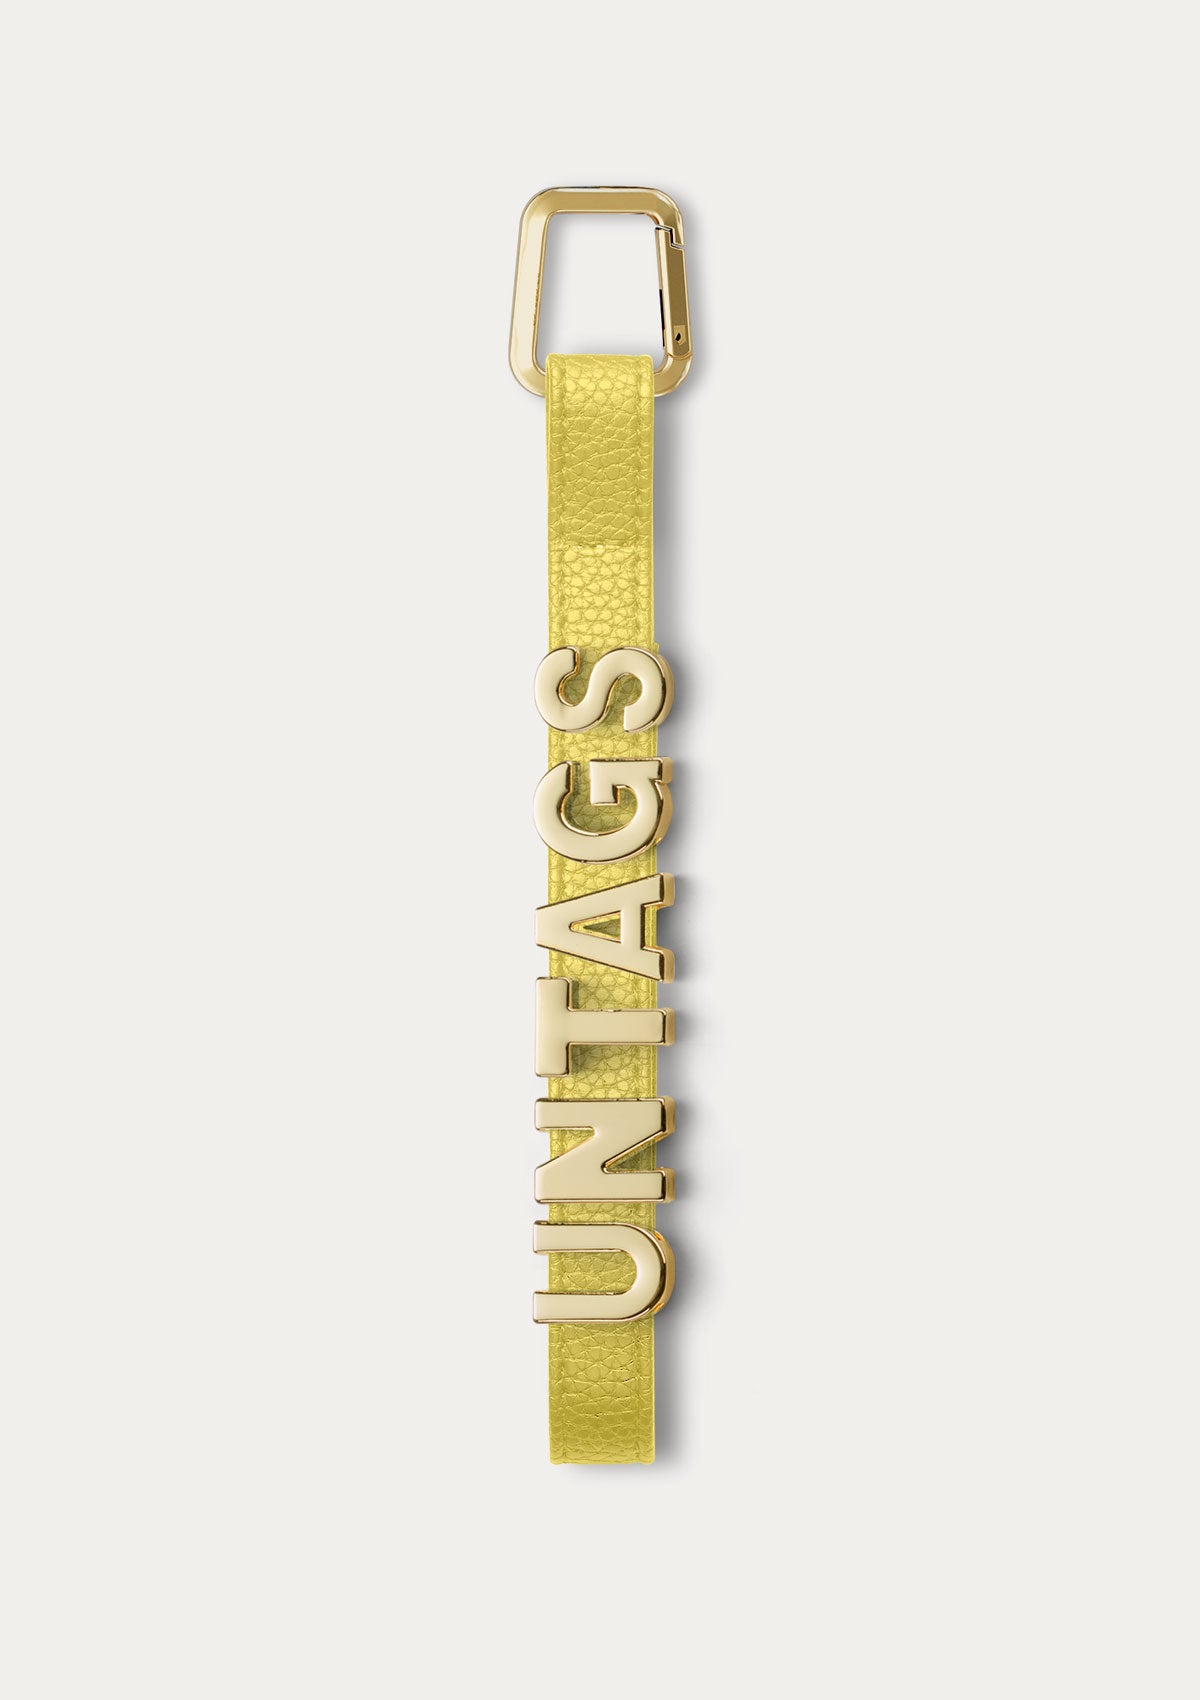 Phone Strap personalizzabile Untags di colore giallo per iPhone con lettere in metallo che compongono un testo personalizzato